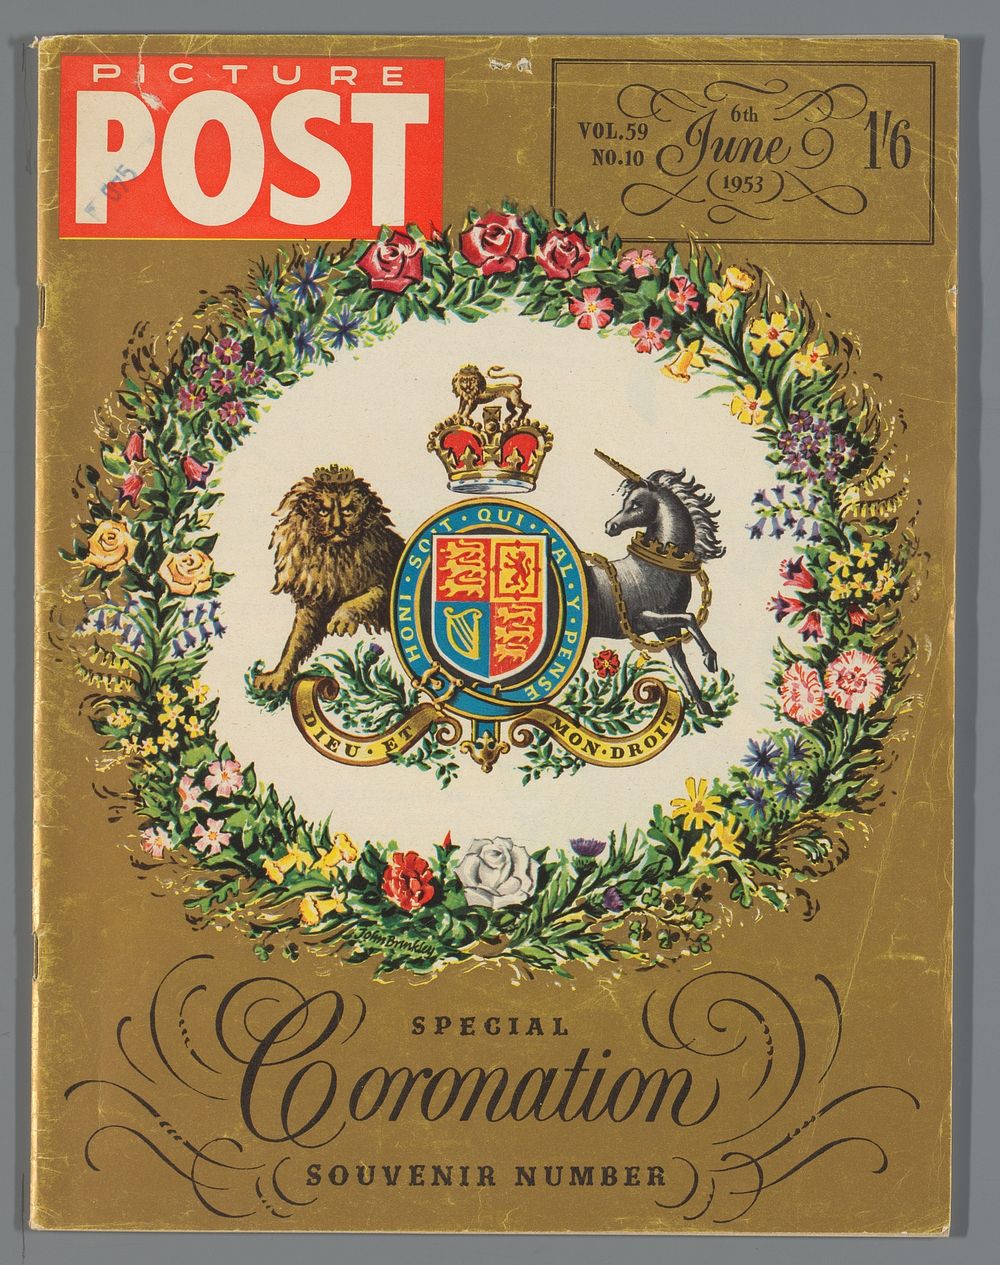 Exemplaar van de speciale editie van de Picture Post tgv de kroning van koningin Elizabeth II, 6 juni 1953 (1953) by Hulton…